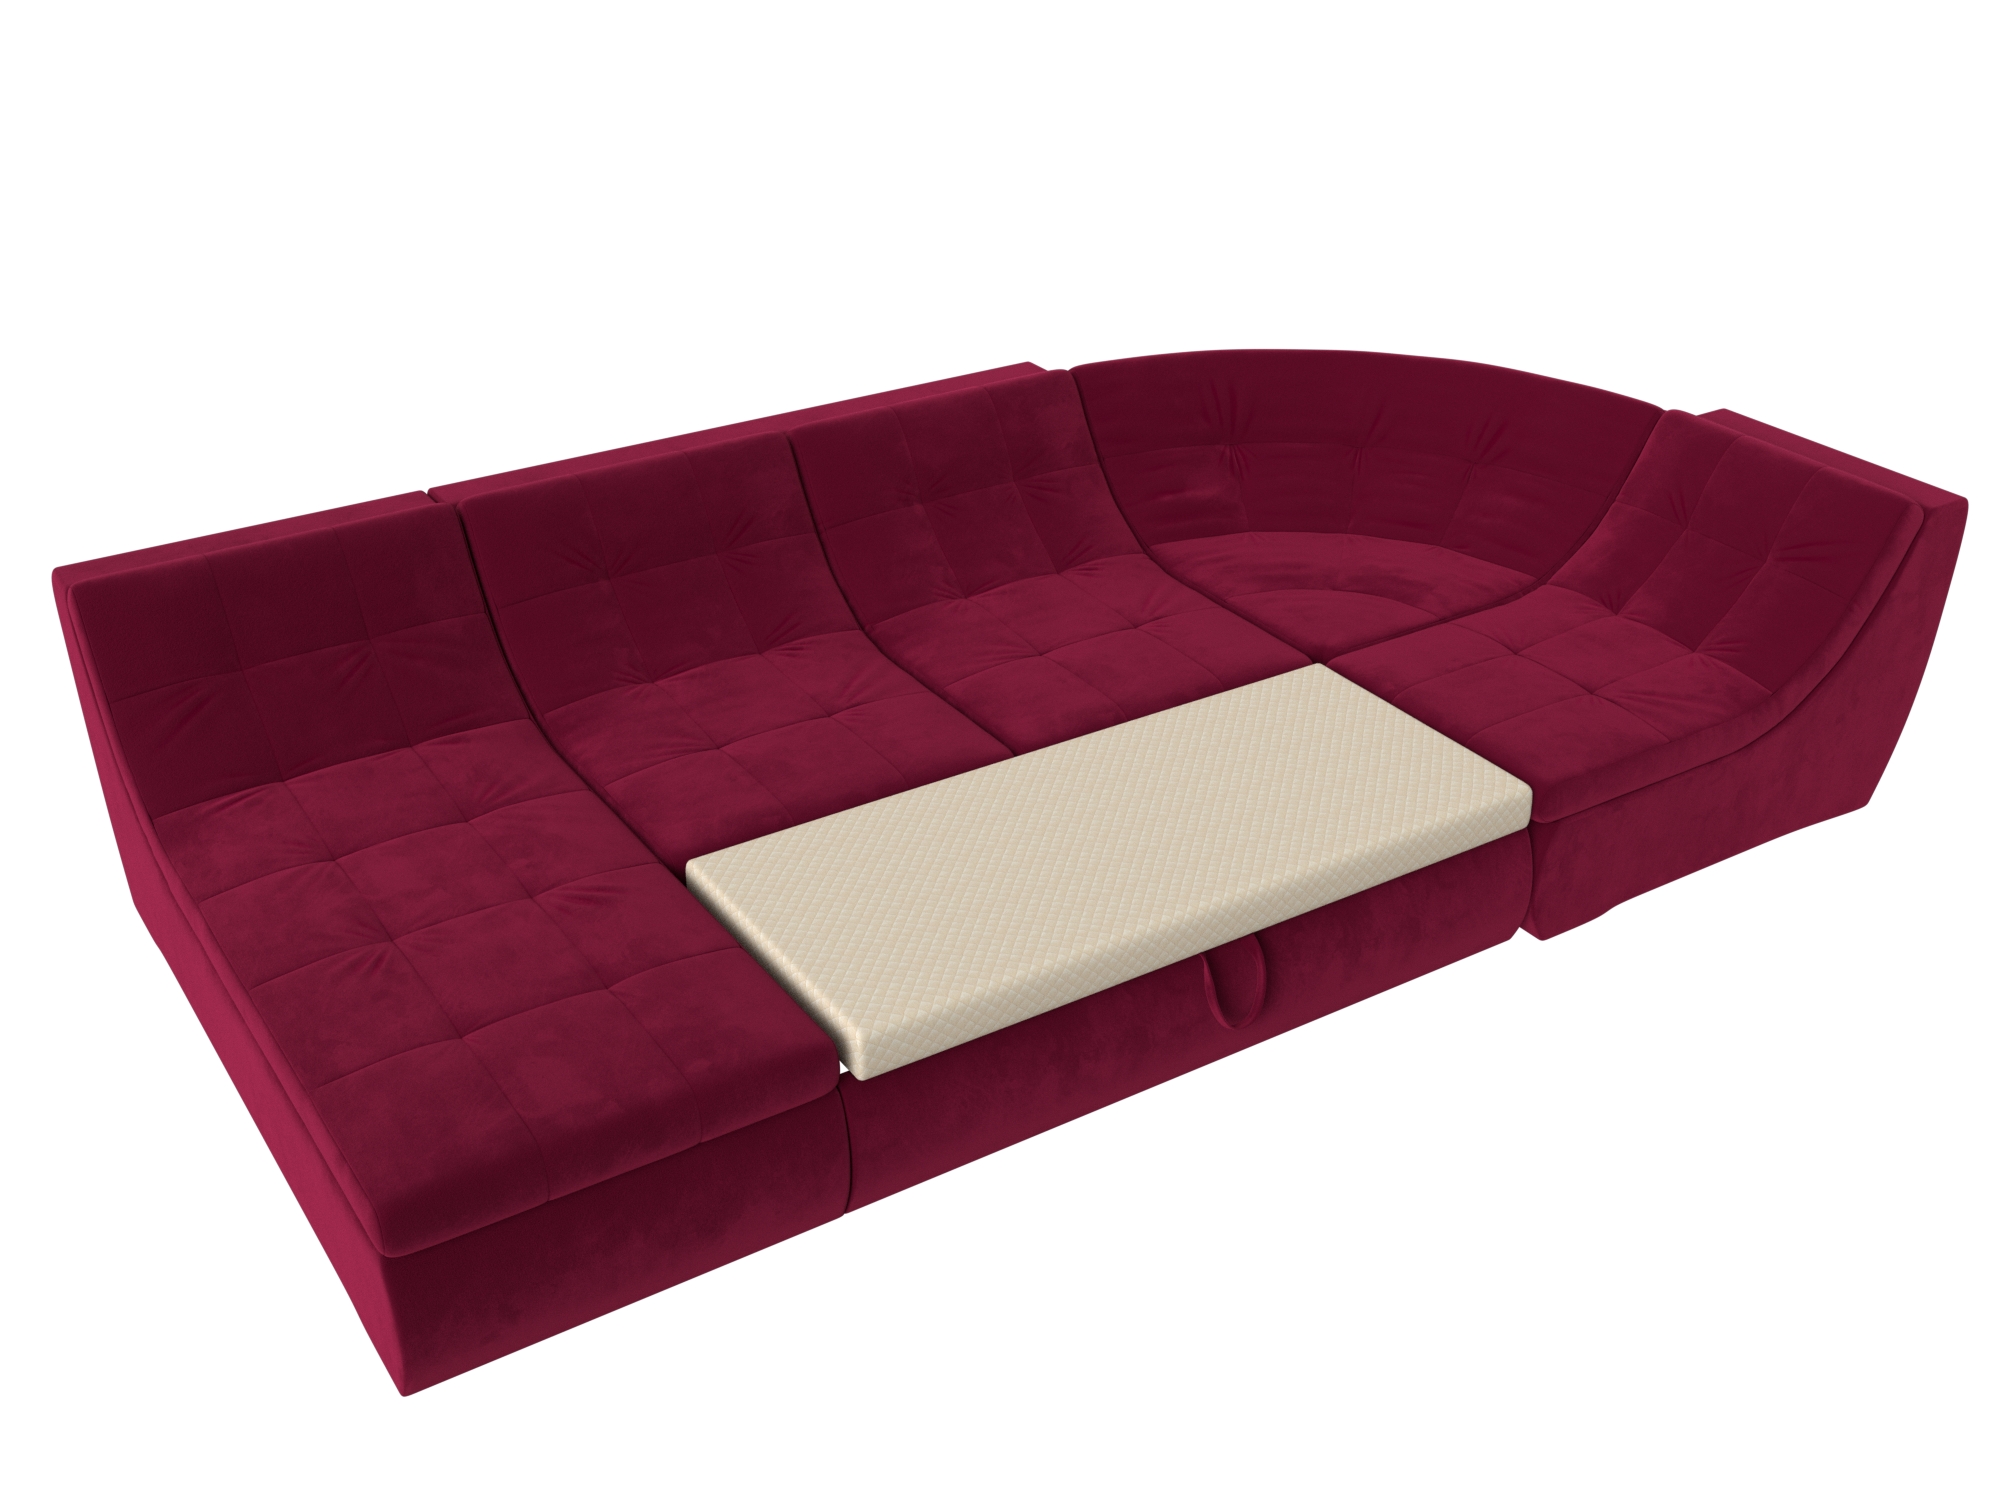 П-образный модульный диван Холидей Бордовый